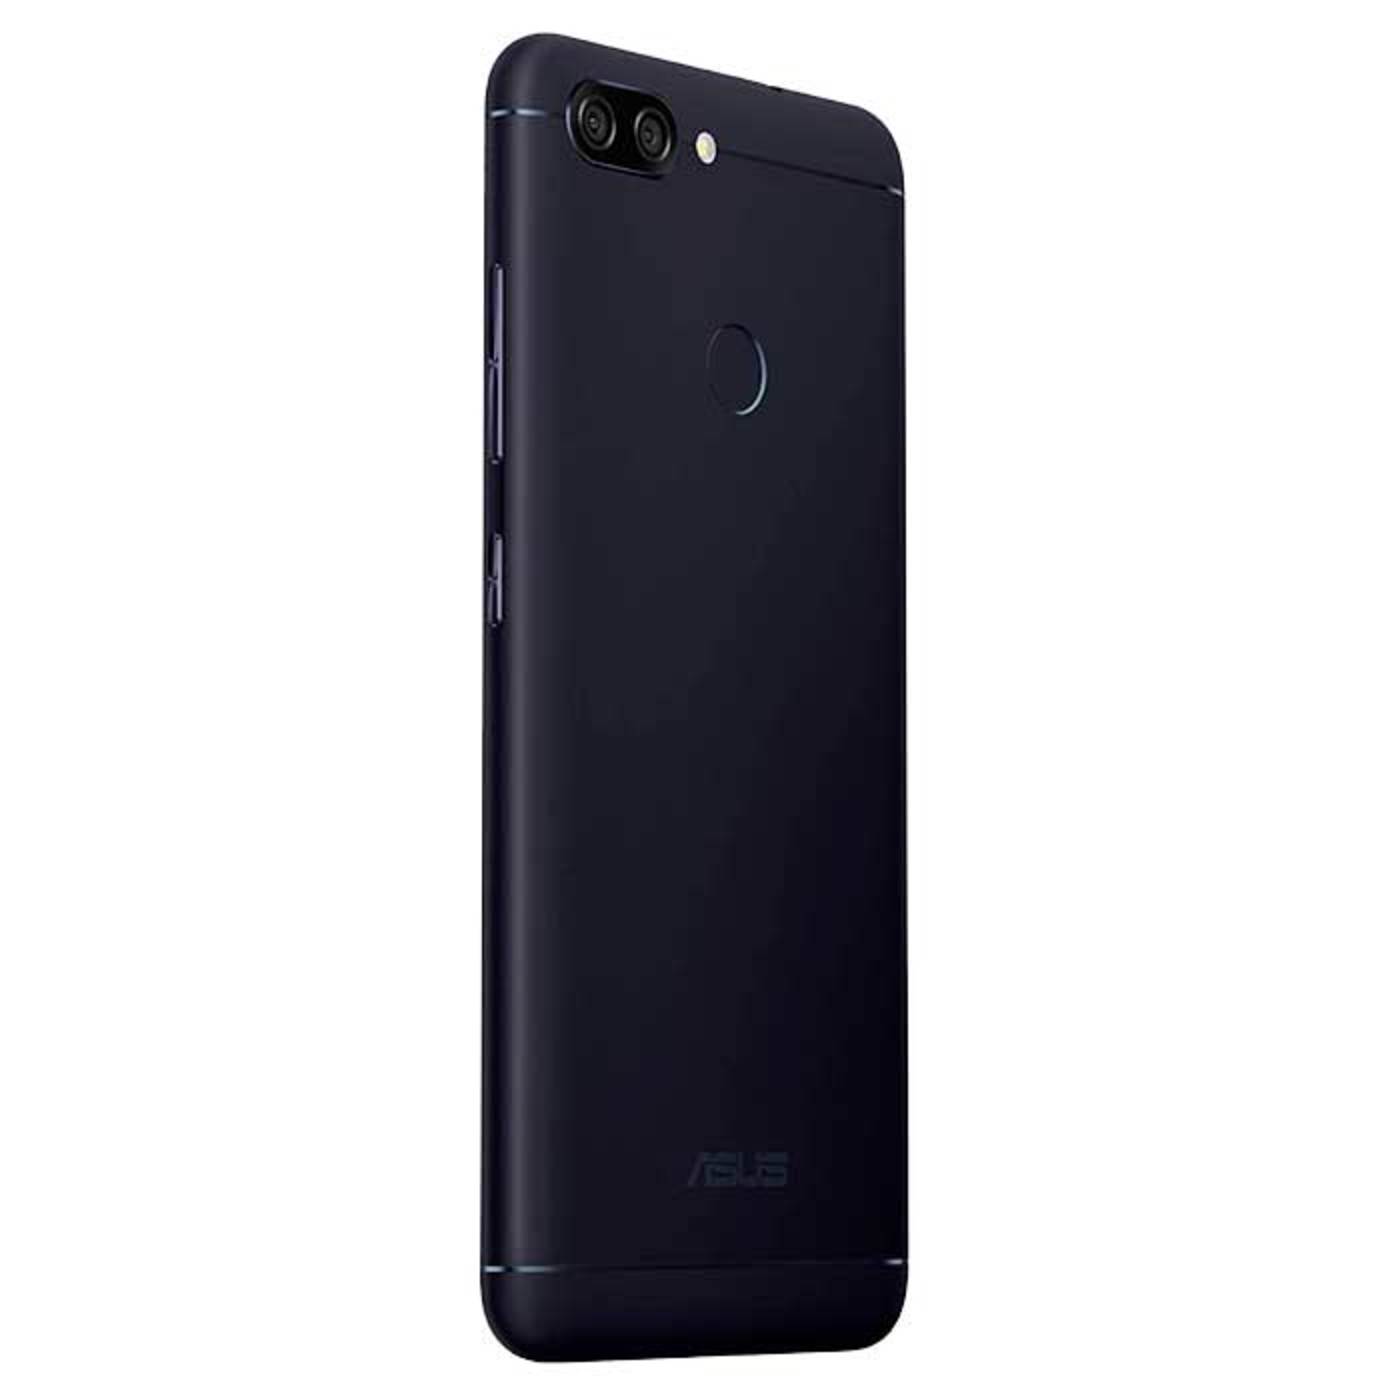 Celular ASUS Zenfone Max Plus 32GB Negro